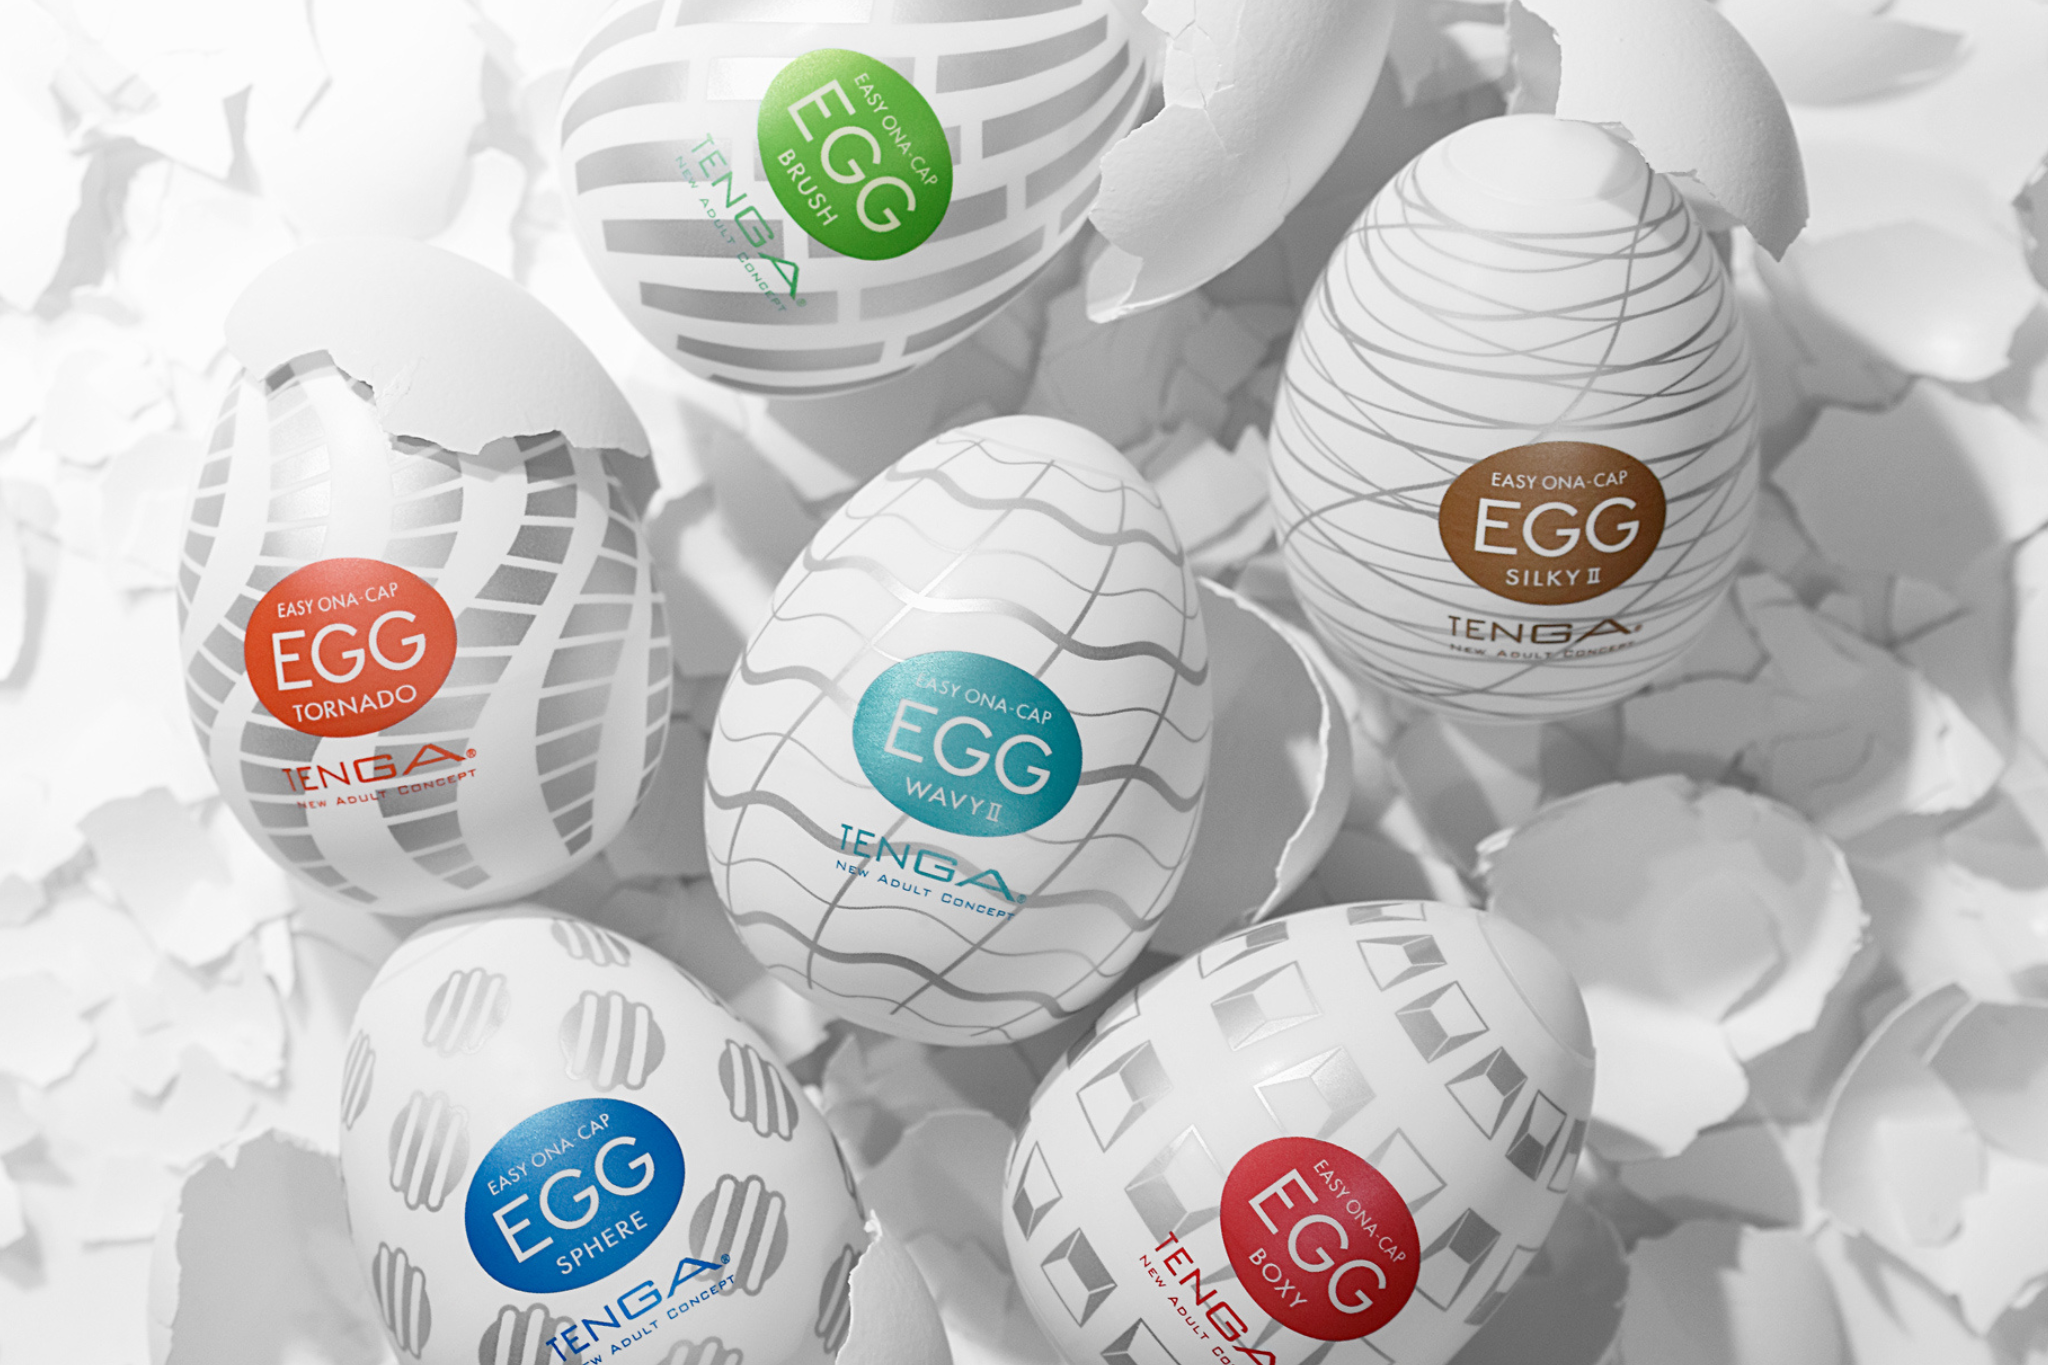 What are Tenga Eggs?